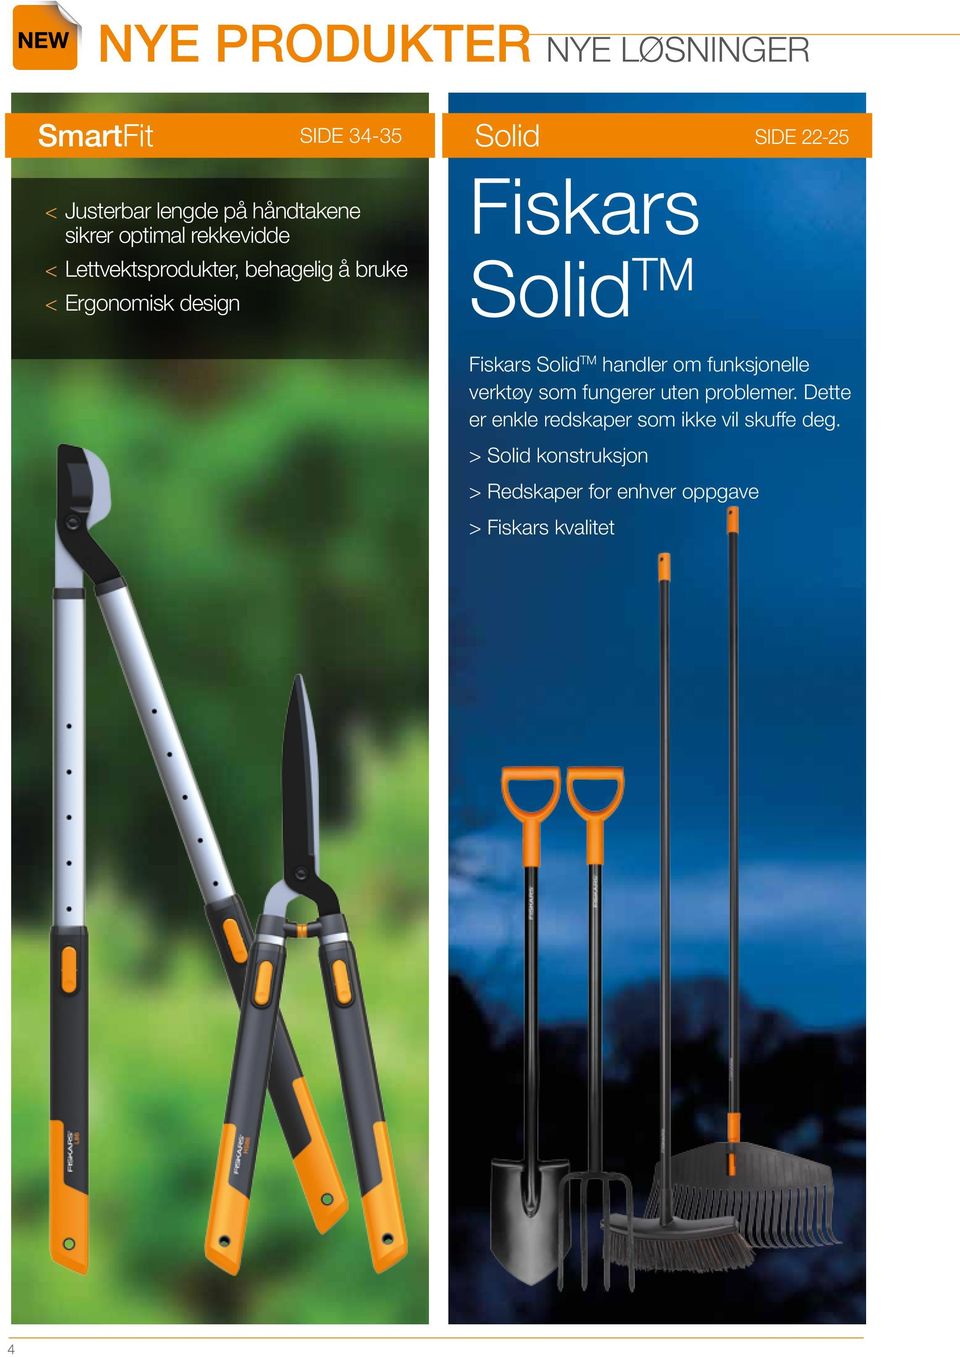 Solid TM Fiskars Solid TM handler om funksjonelle verktøy som fungerer uten problemer.